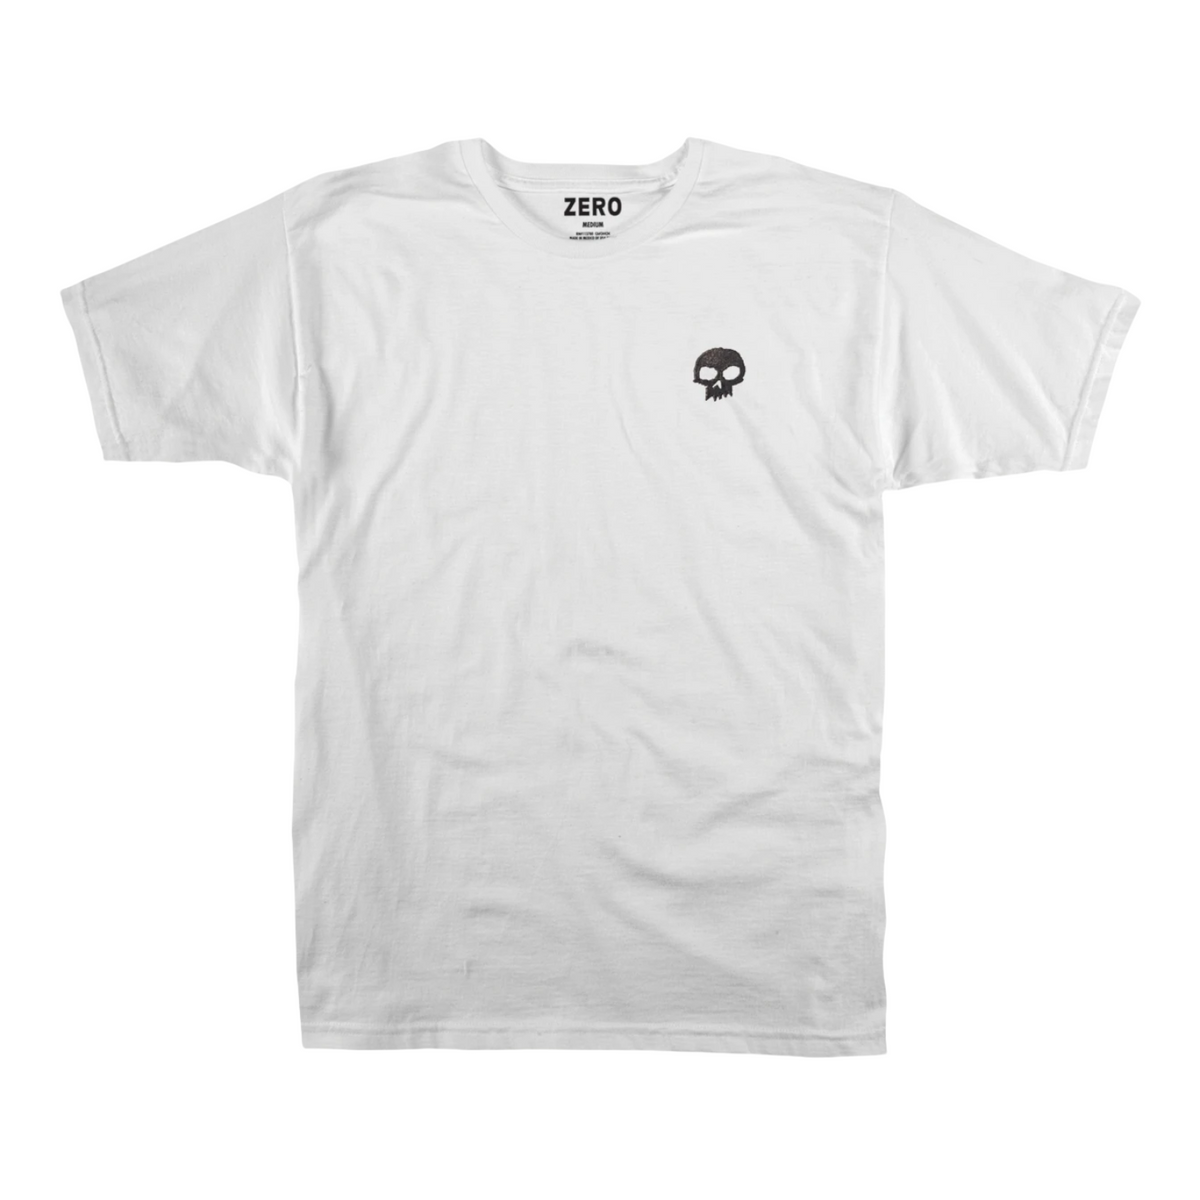 Zero Single Skull Black T-Shirt